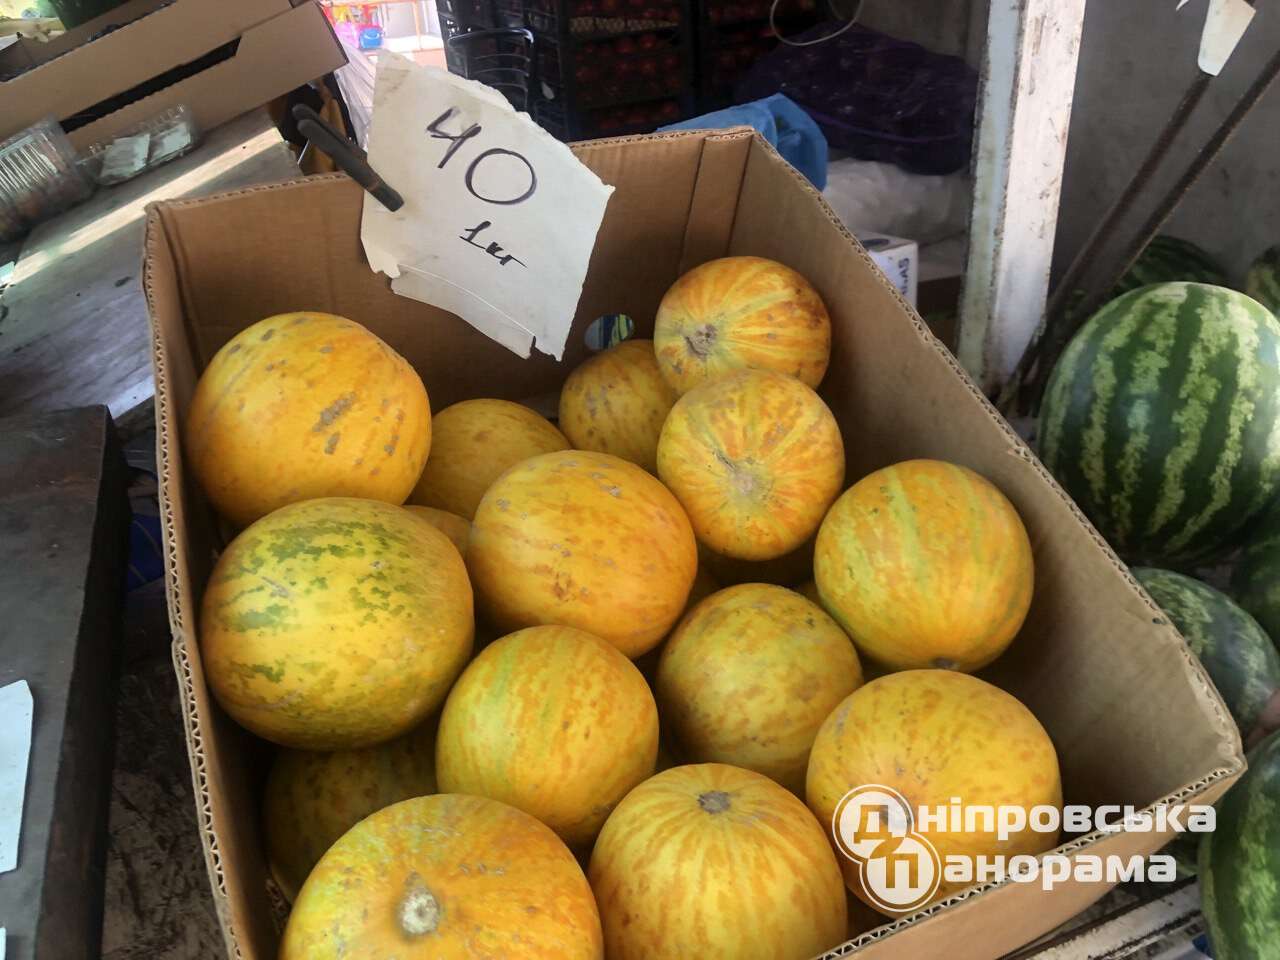 цены на фрукты Днепр